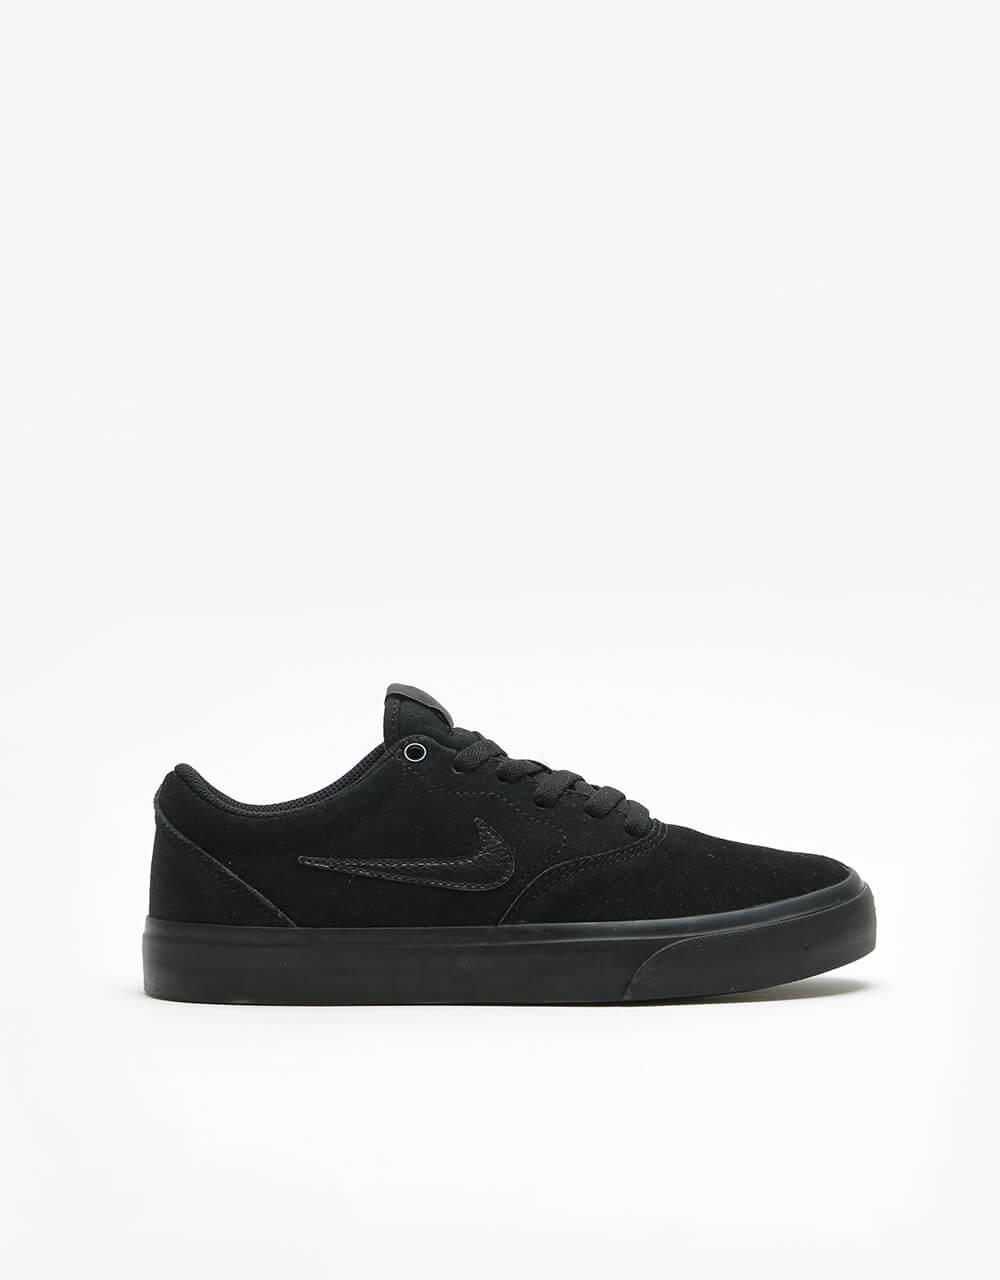 Nike SB Charge Kids Skate Shoes - Black/Black/Black